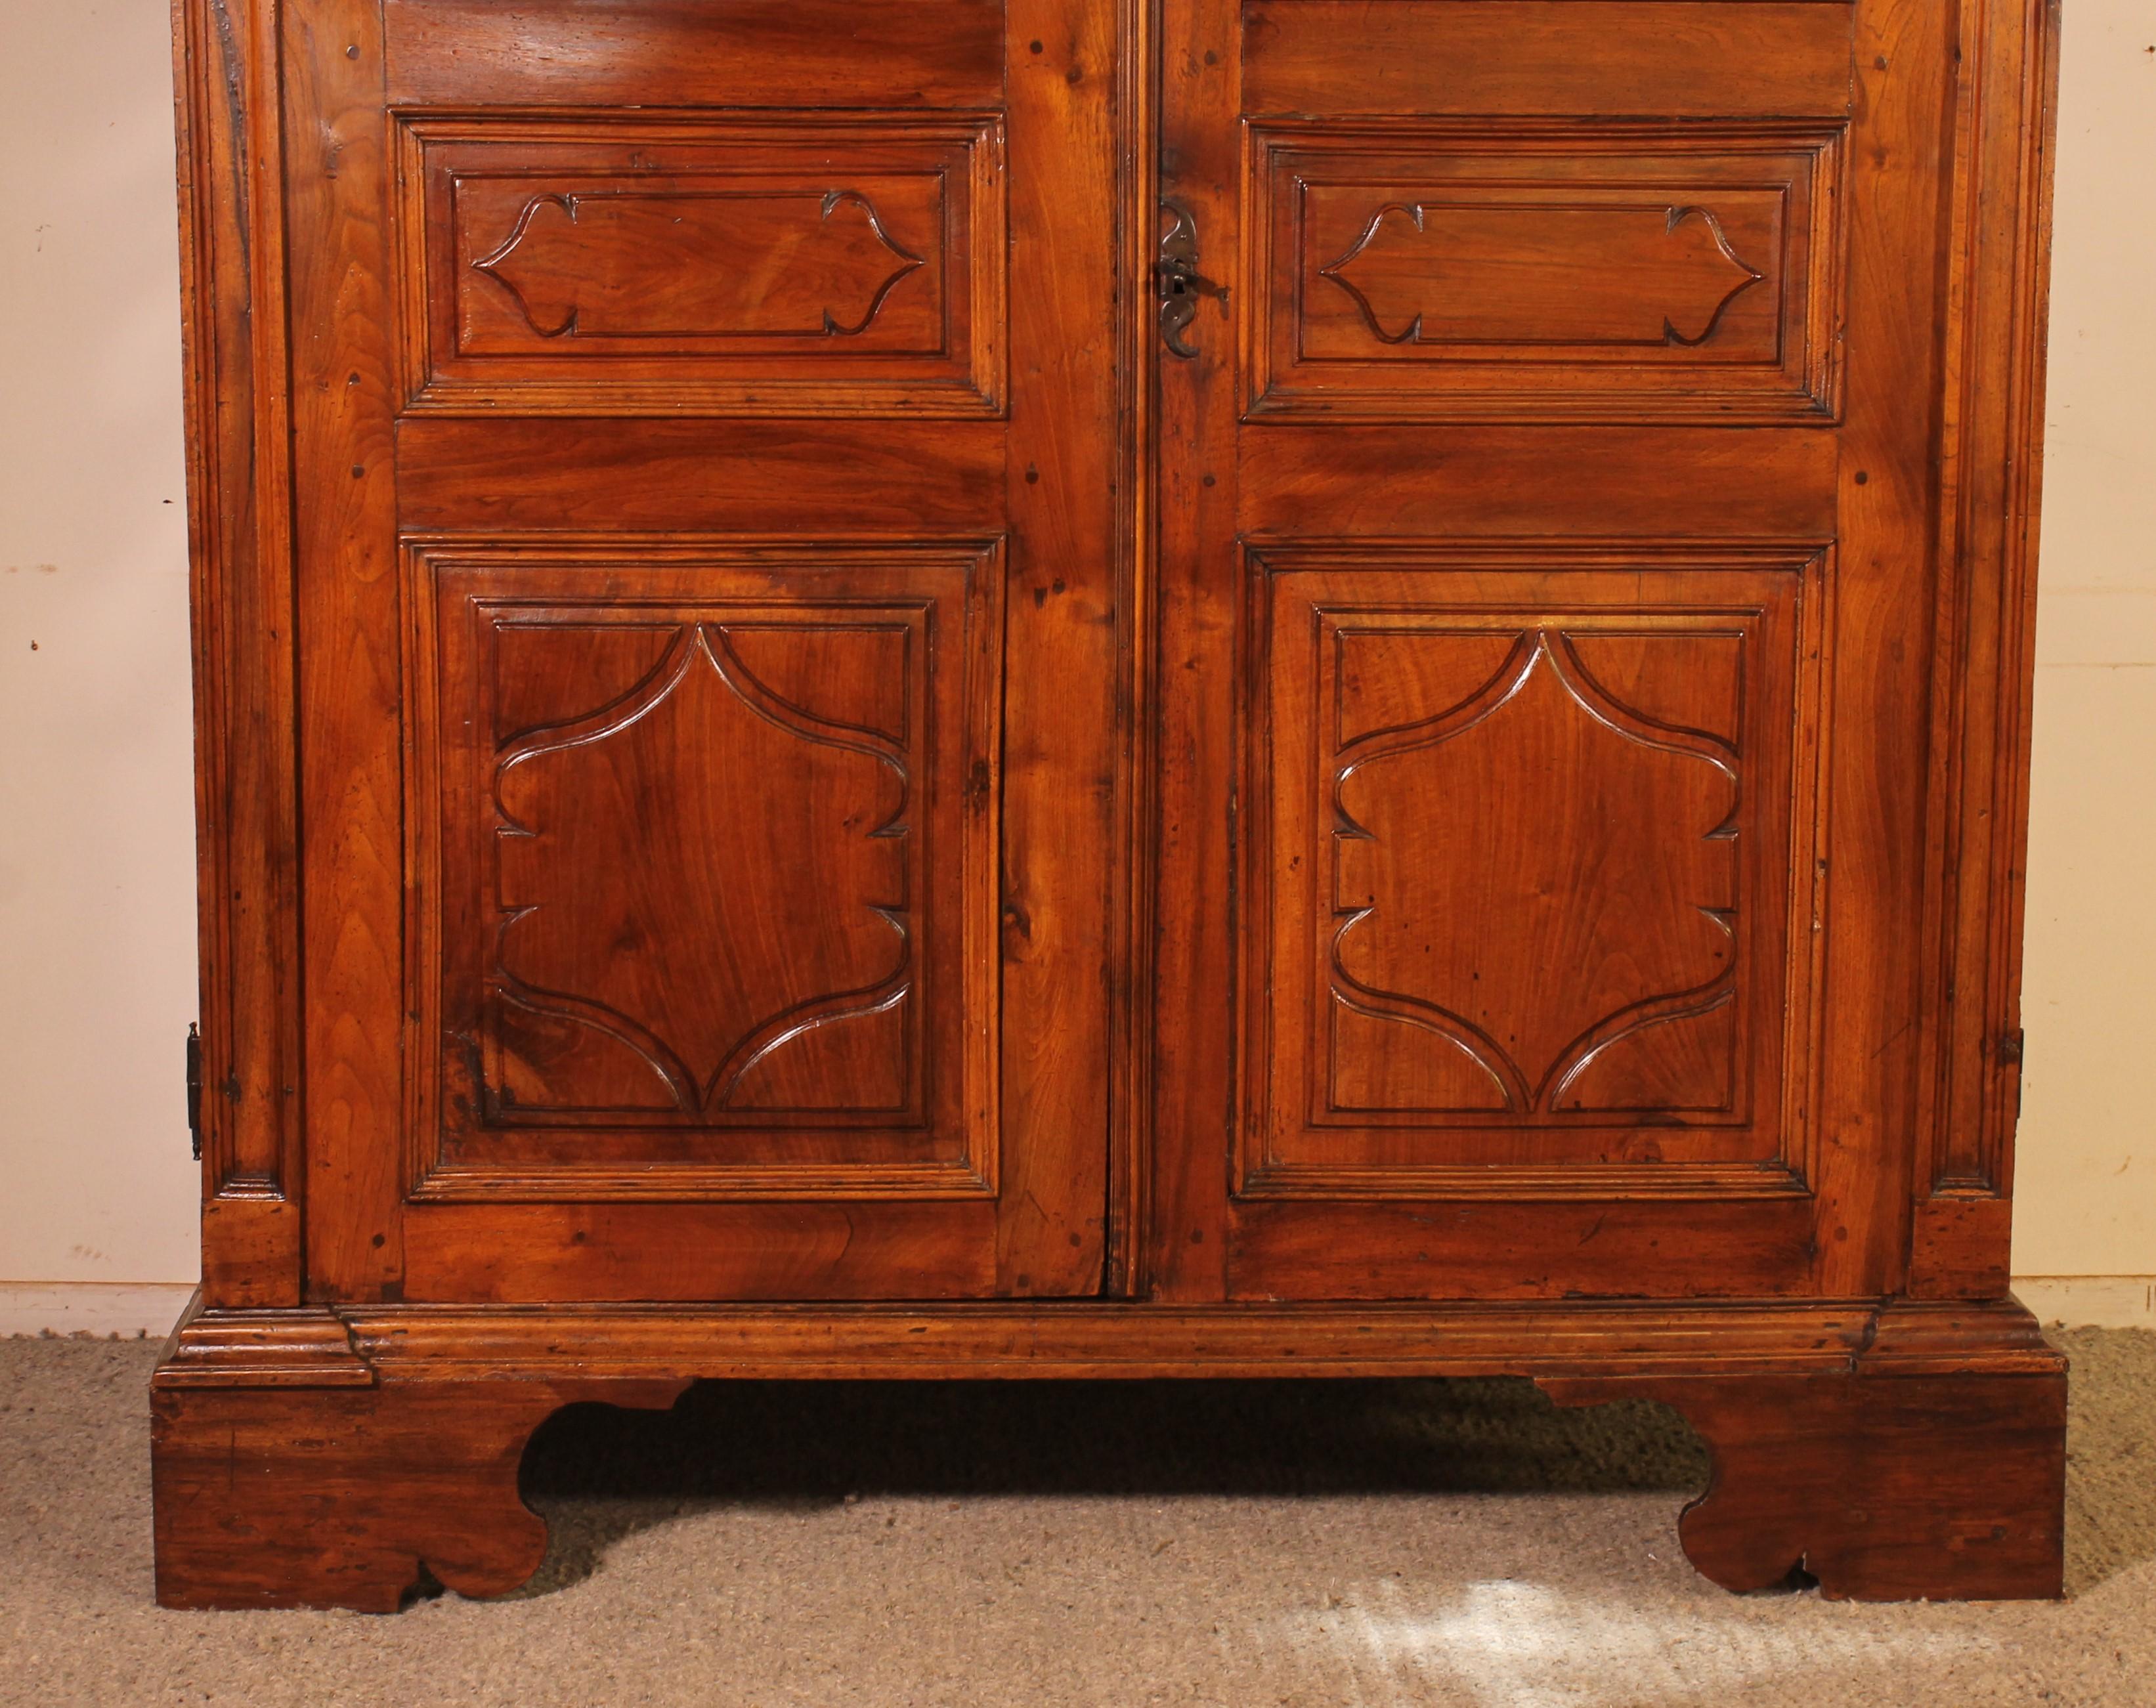 Prächtiger Schrank aus massivem Nussbaumholz aus dem 17. Jahrhundert aus Italien

Sehr schöne und seltene italienische Handwerkskunst mit einem prächtig geschnitzten Oberteil sowie Sockel. Typisch für italienische Schränke und Möbelstücke dieser